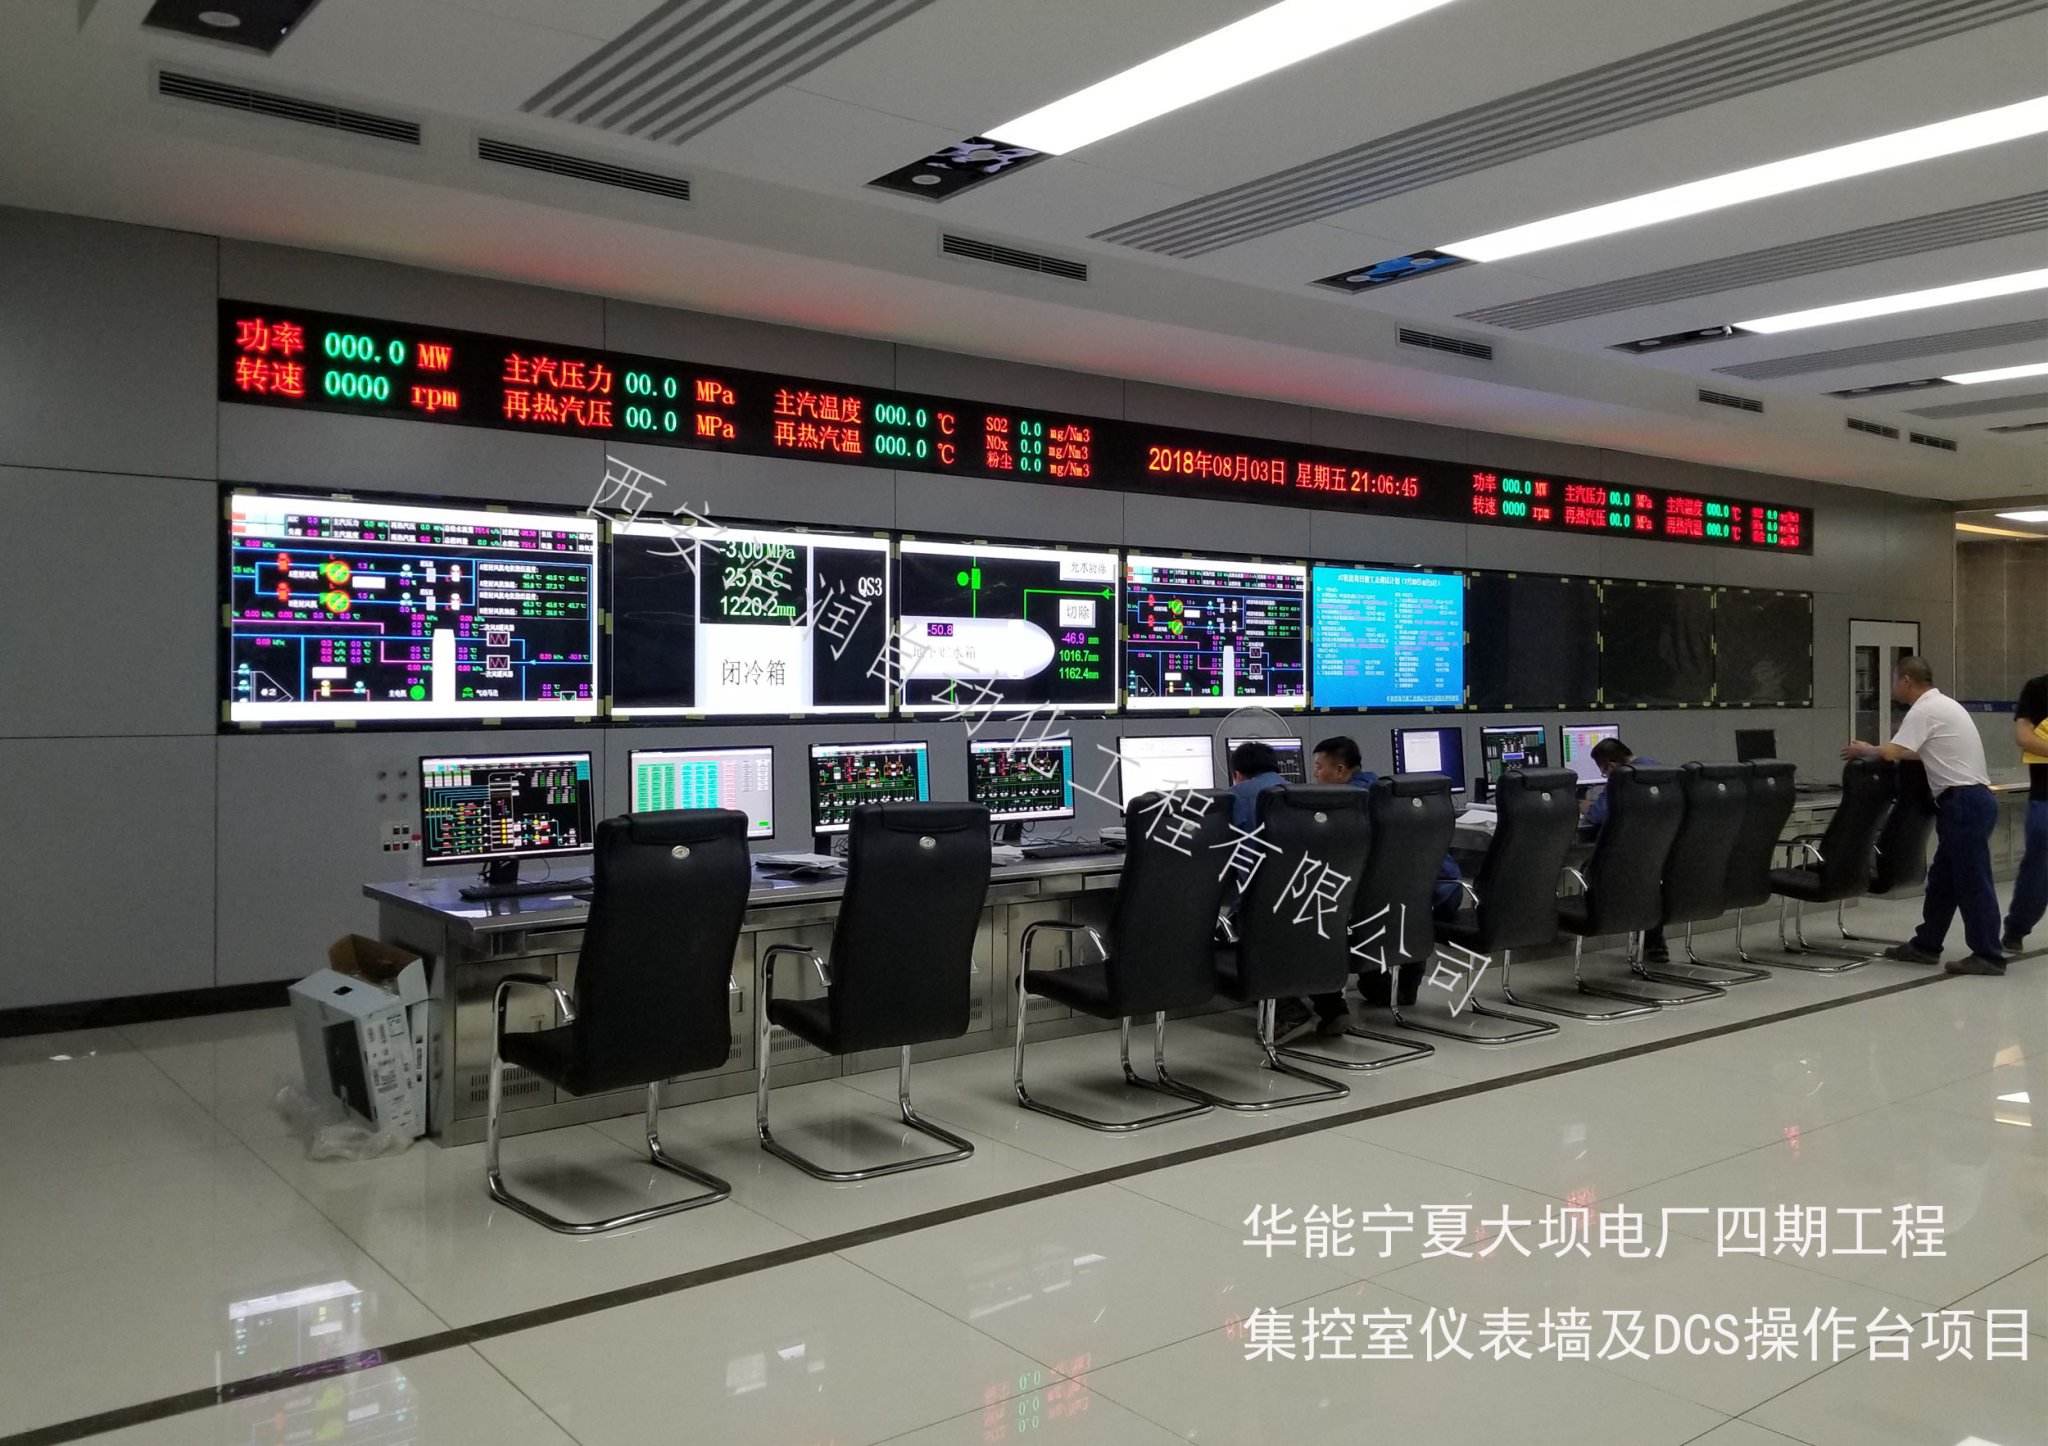 华能宁夏大坝电厂四期工程集控室仪表墙及DCS操作台项目